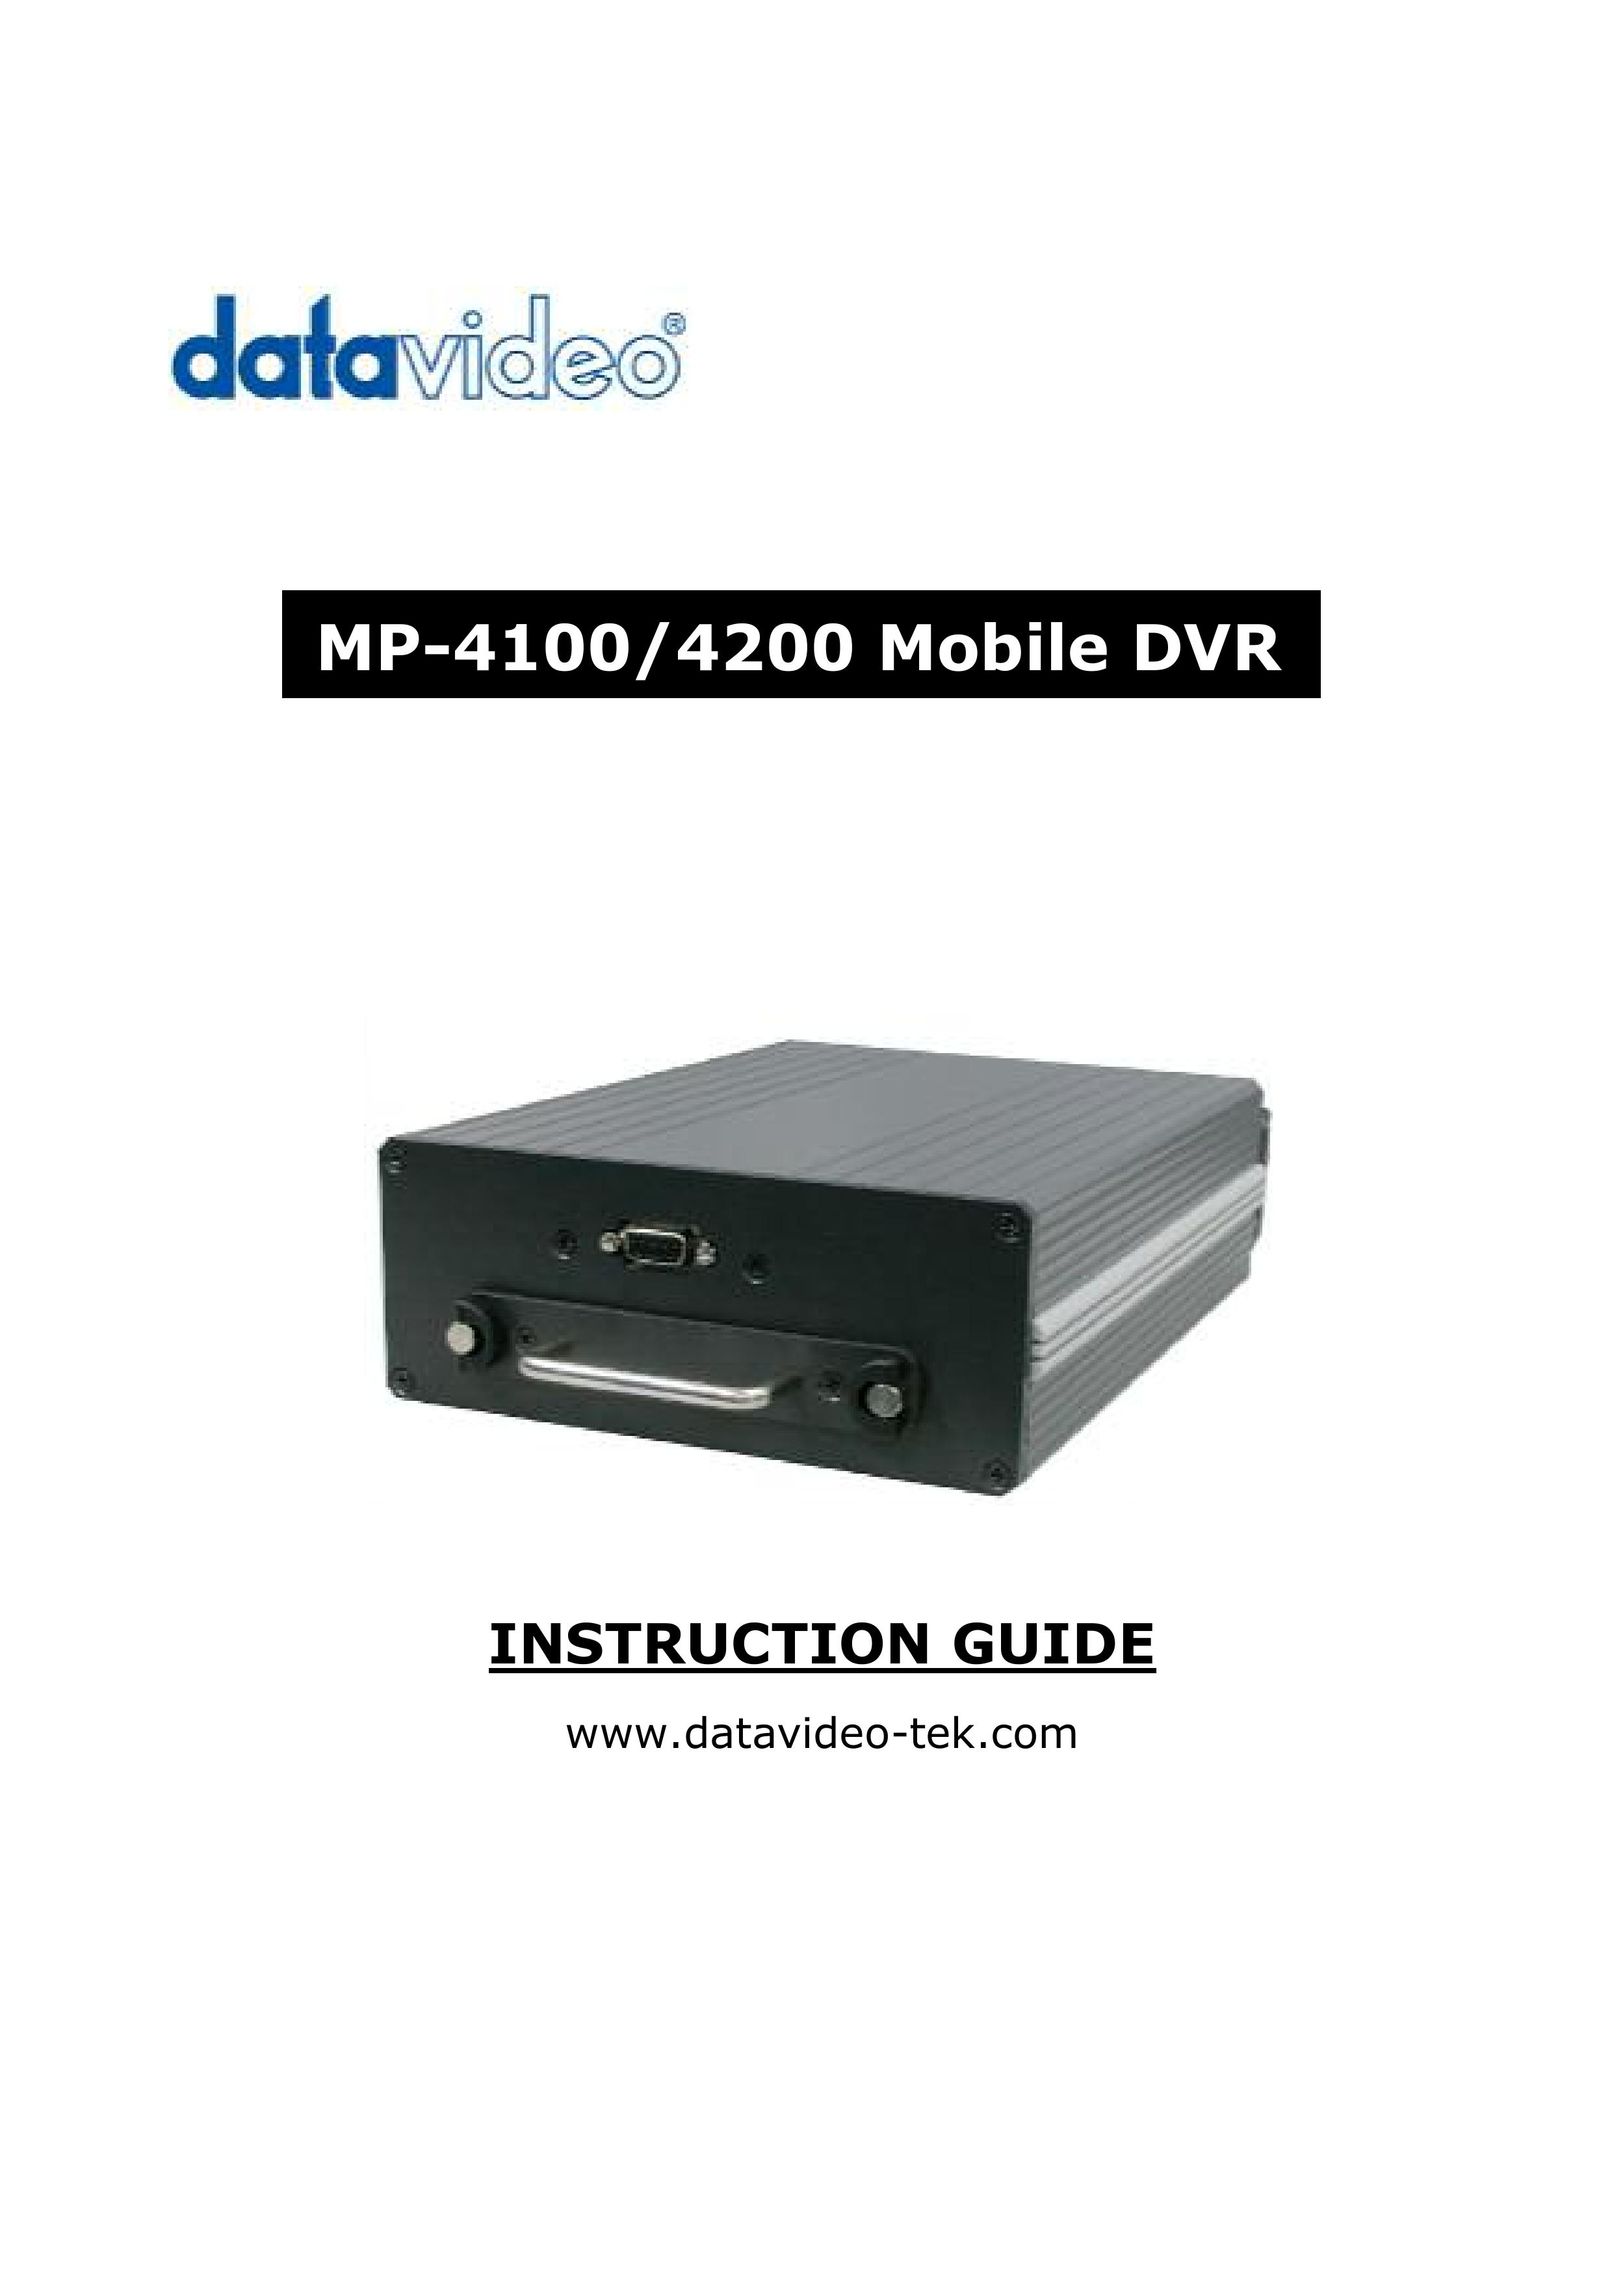 Datavideo MP-4200 DVR User Manual